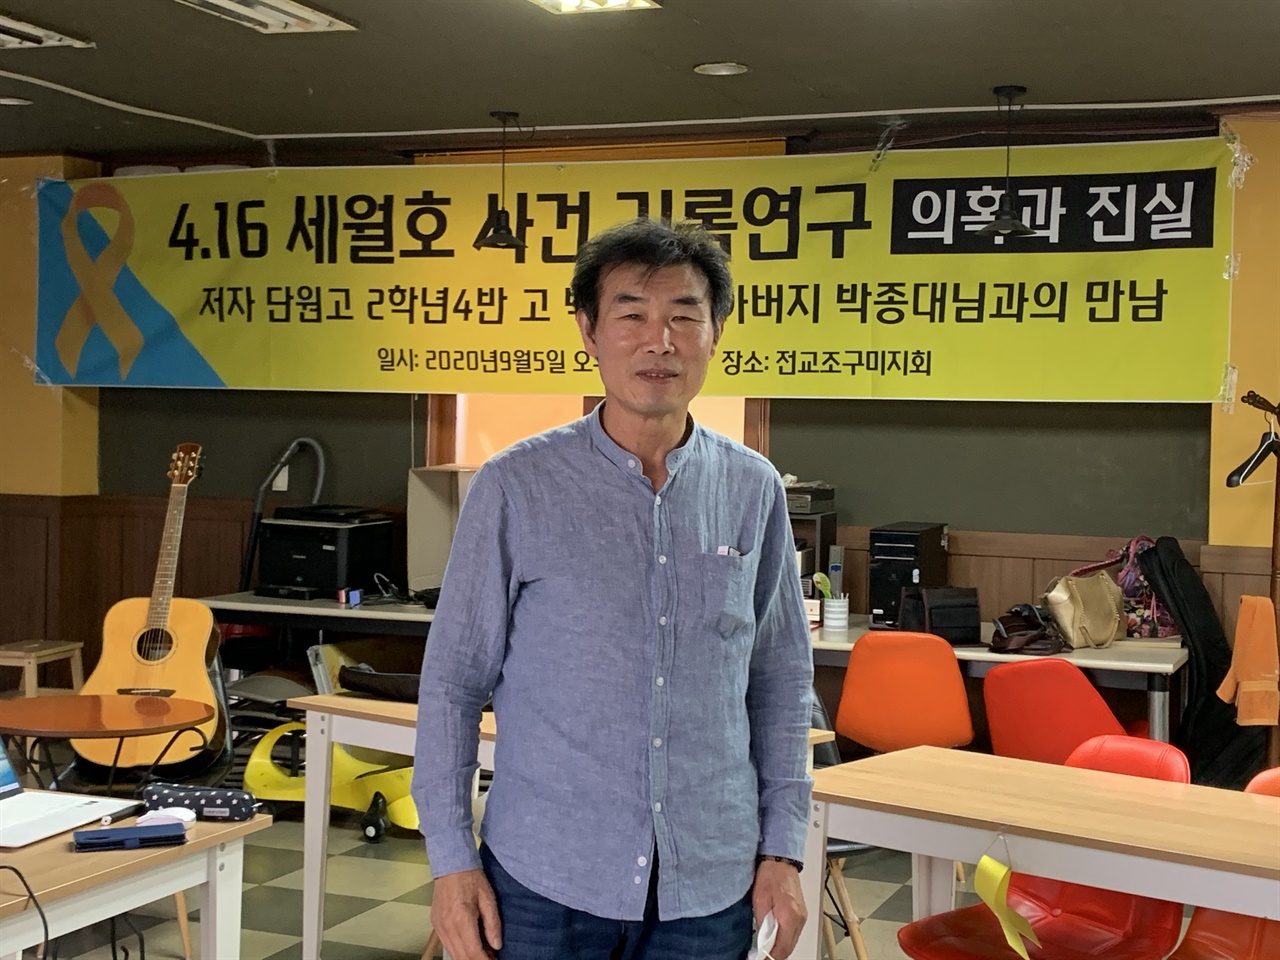 .9월5일 4.16세월호 사건 기록연구 구미북콘서트에 함께한 동영아빠 김재만씨.